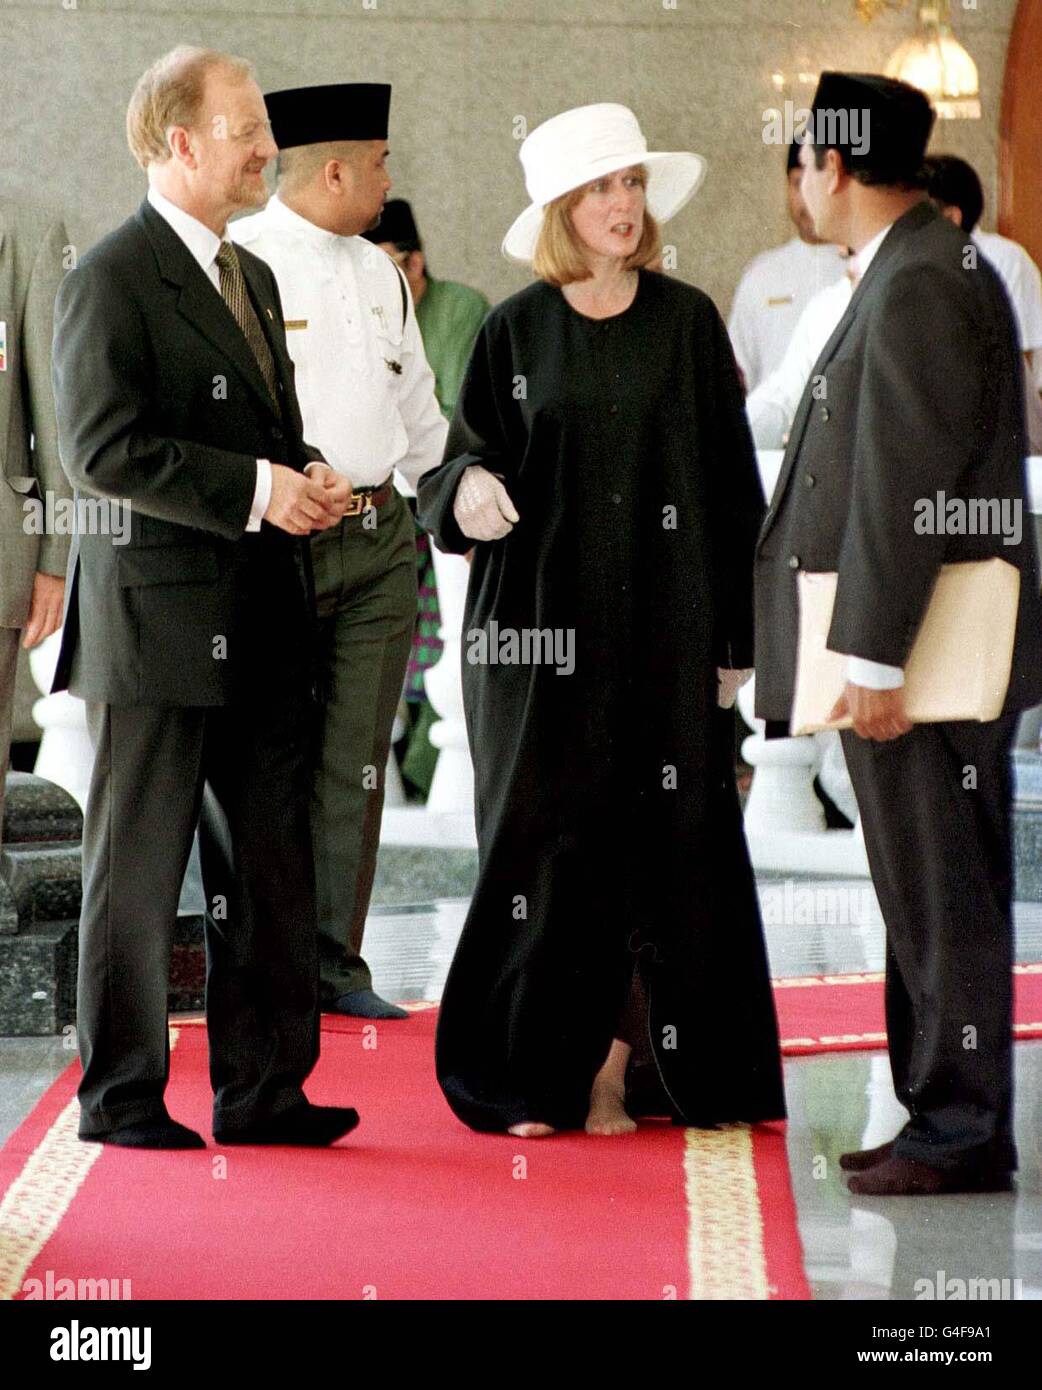 Il Segretario degli Esteri Robin Cook (a sinistra) e la sua nuova moglie Gaynor, vestita in un 'gamis' musulmano, visitano la Moschea JaME'ASR Hassanil Bolkiah a Bandar seri Begawan durante il secondo giorno (venerdì) della visita di Stato di tre giorni della Regina a Brunei. Fotografia di Fiona Hanson/PA Foto Stock